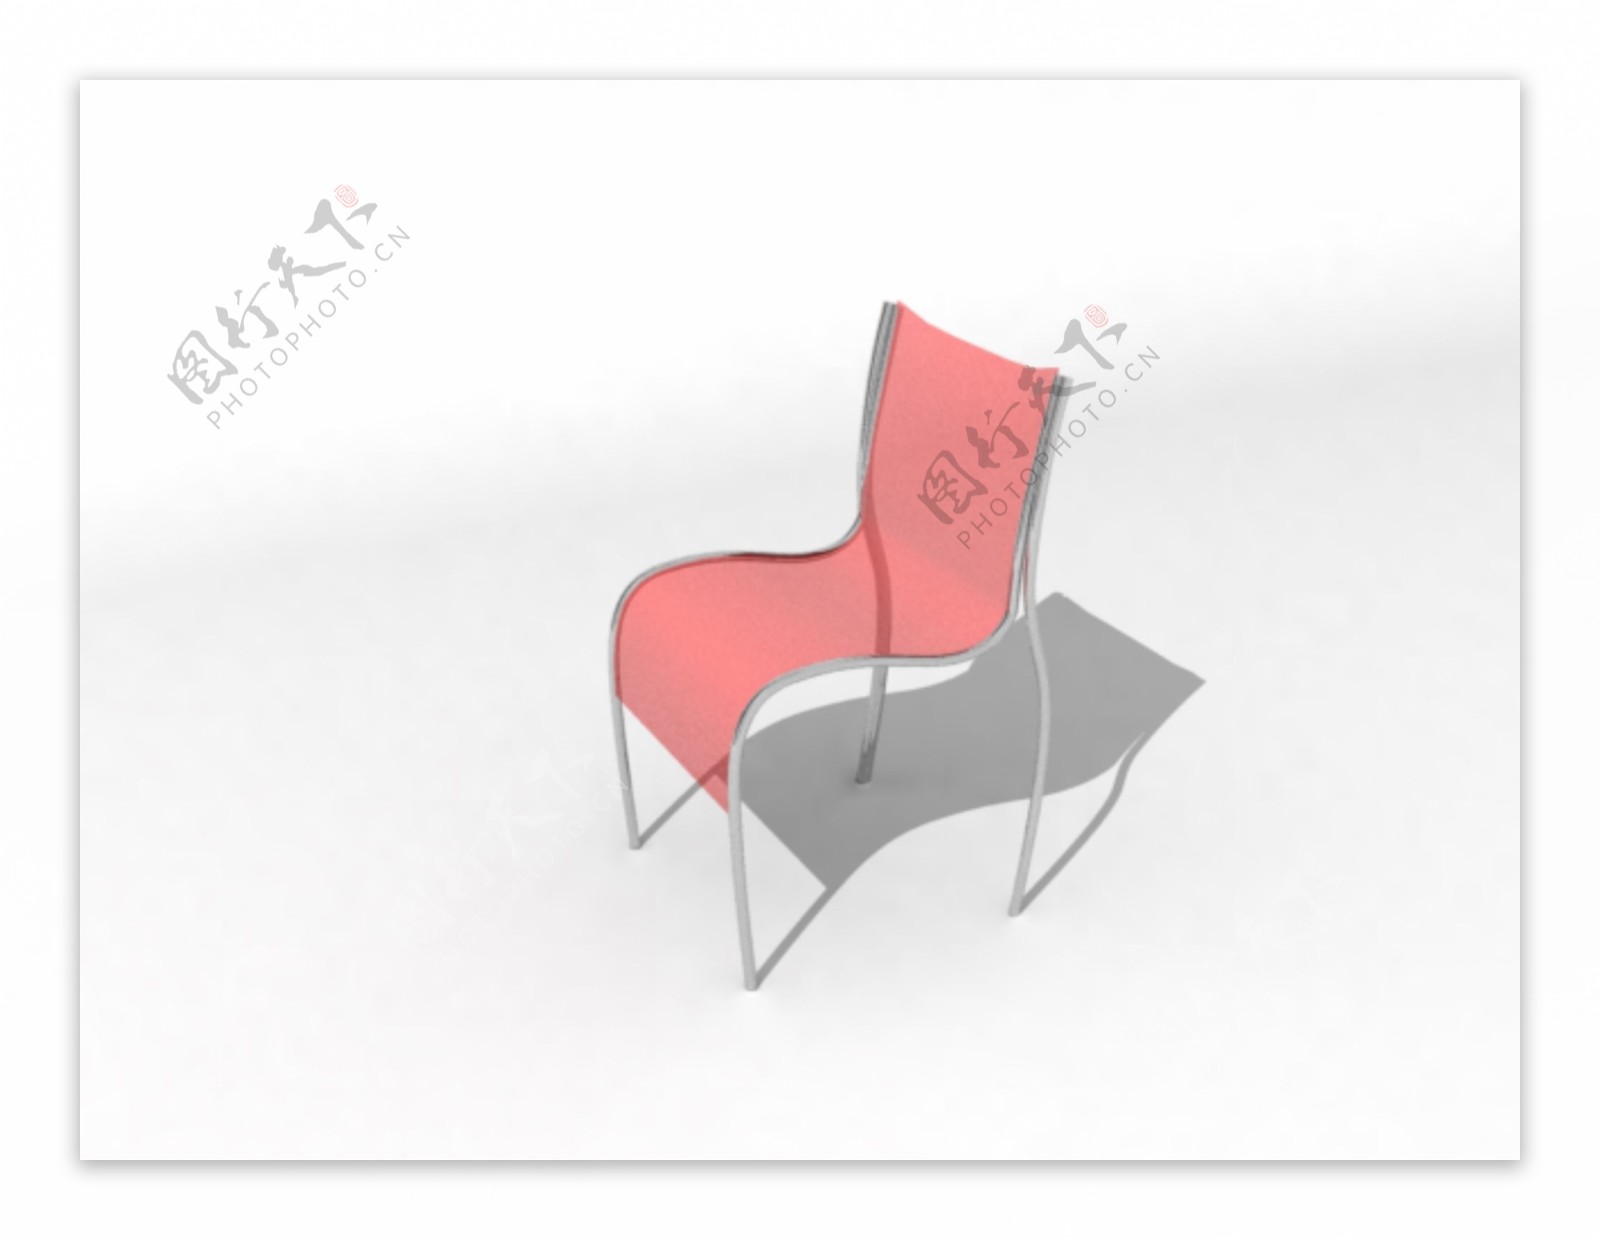 室内家具之椅子1543D模型